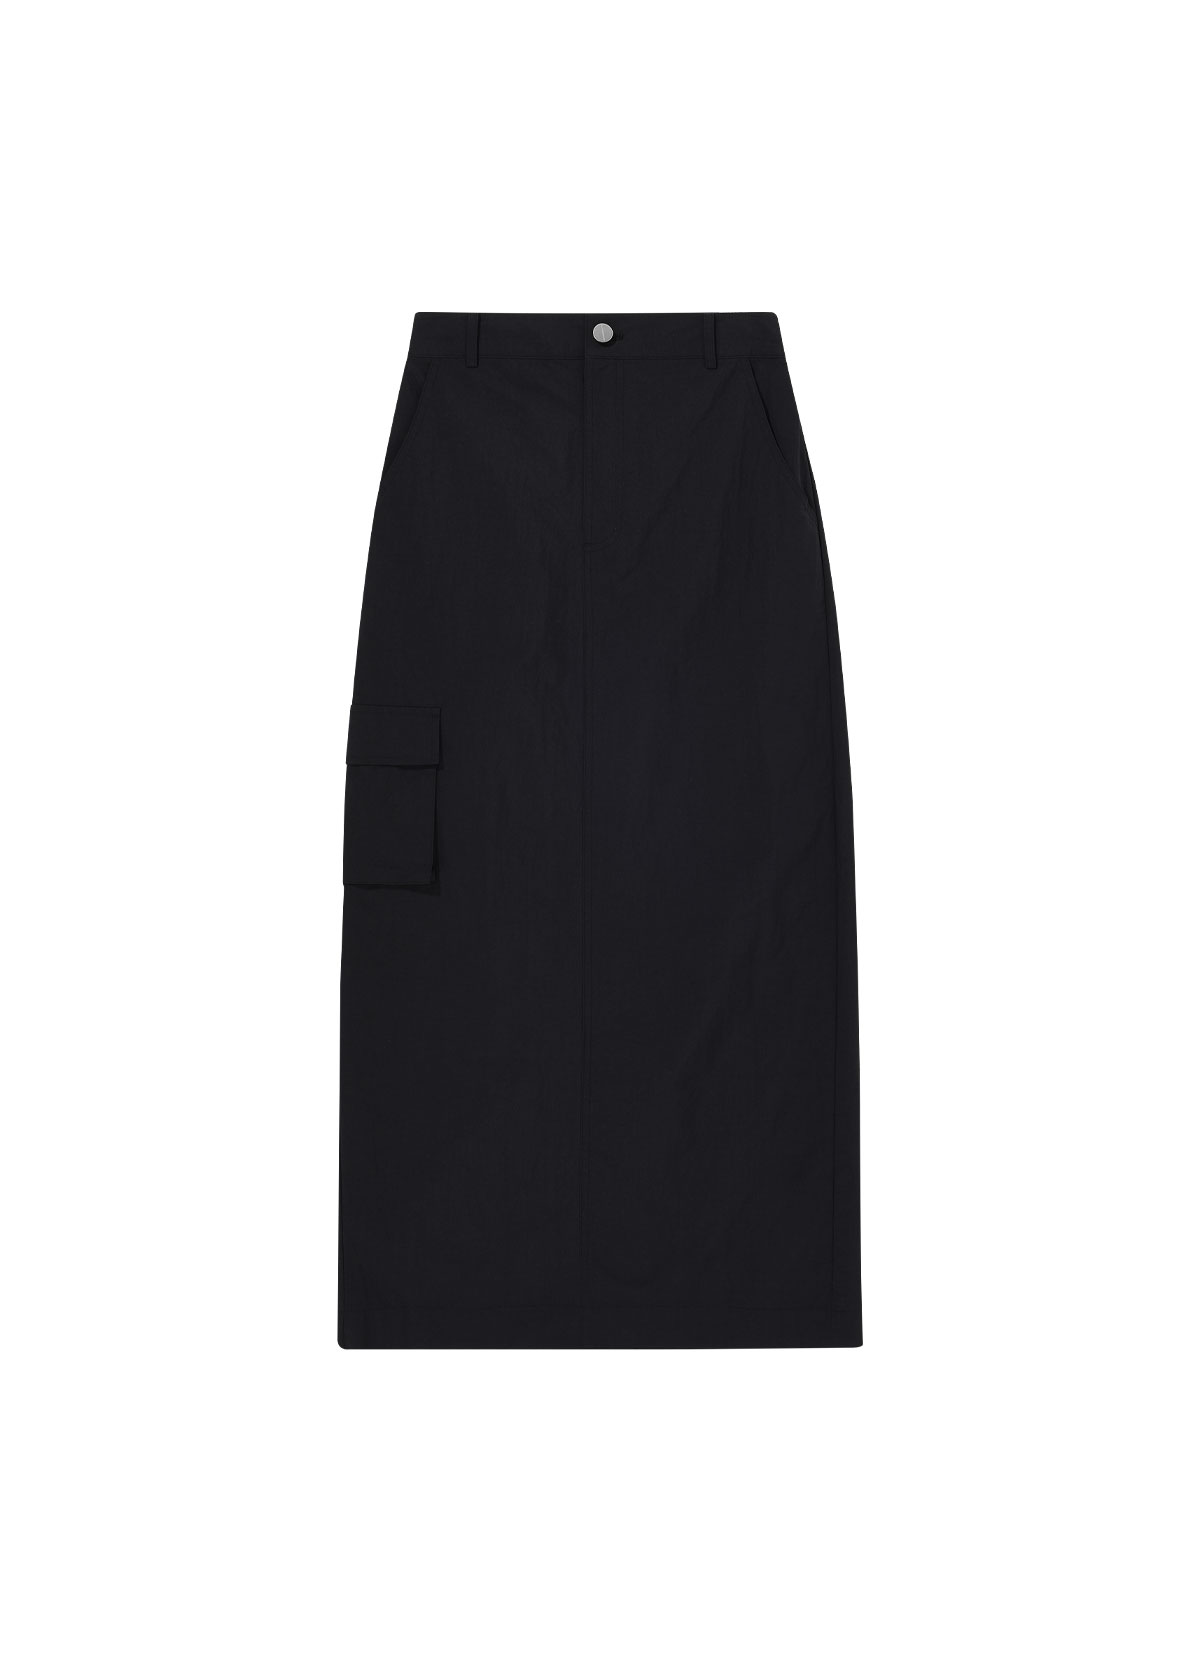 Pocket Skirt (black)